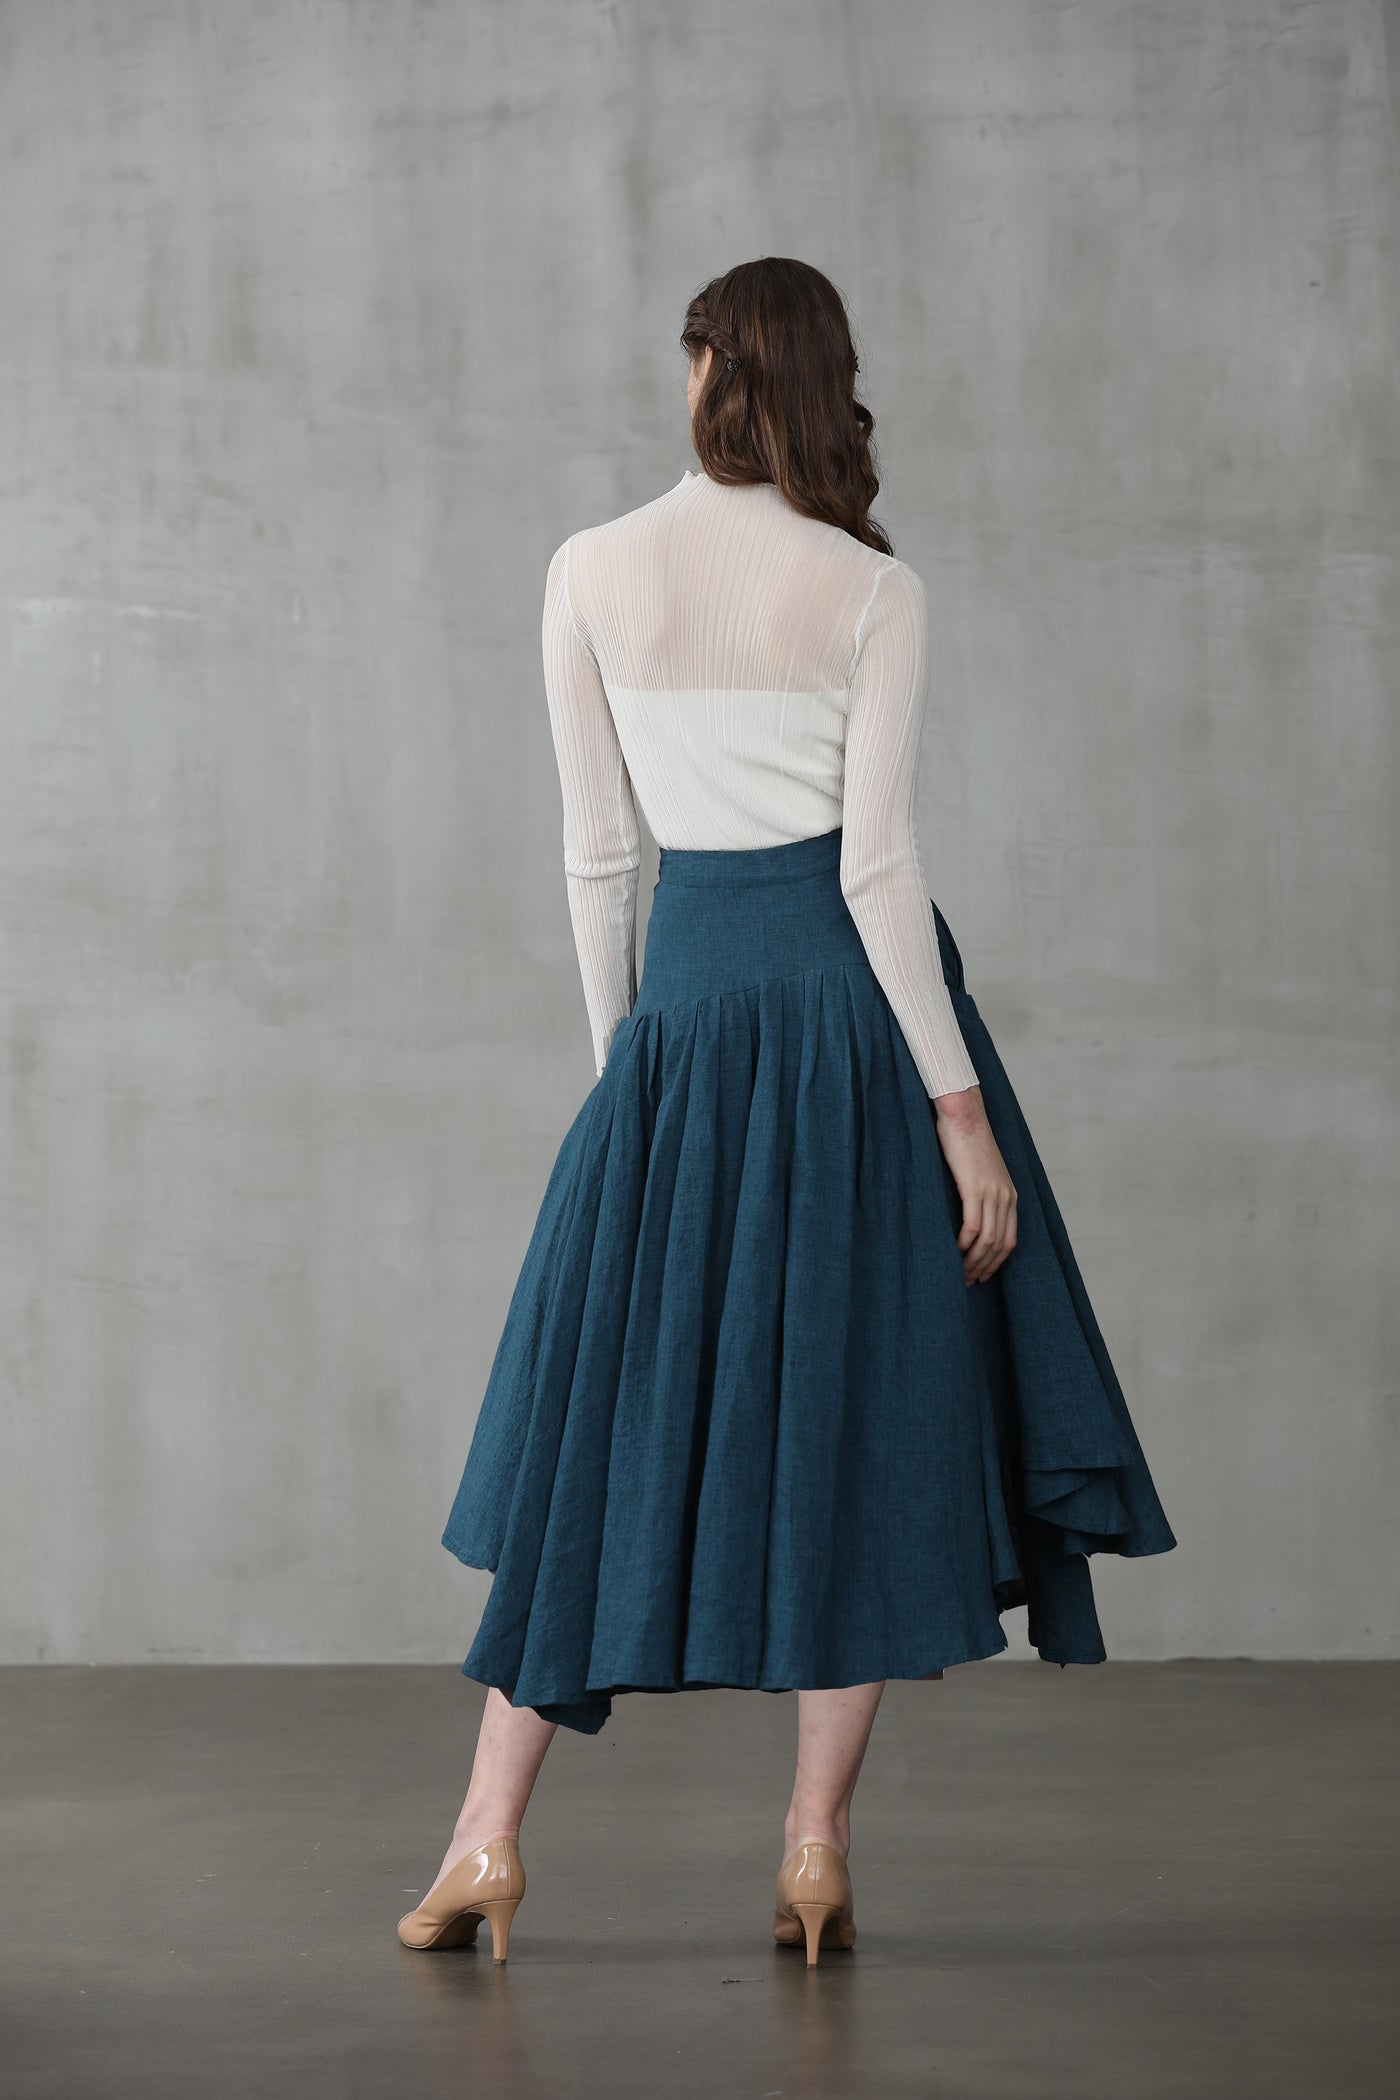 Opera 25 | peacock blue linen skirt